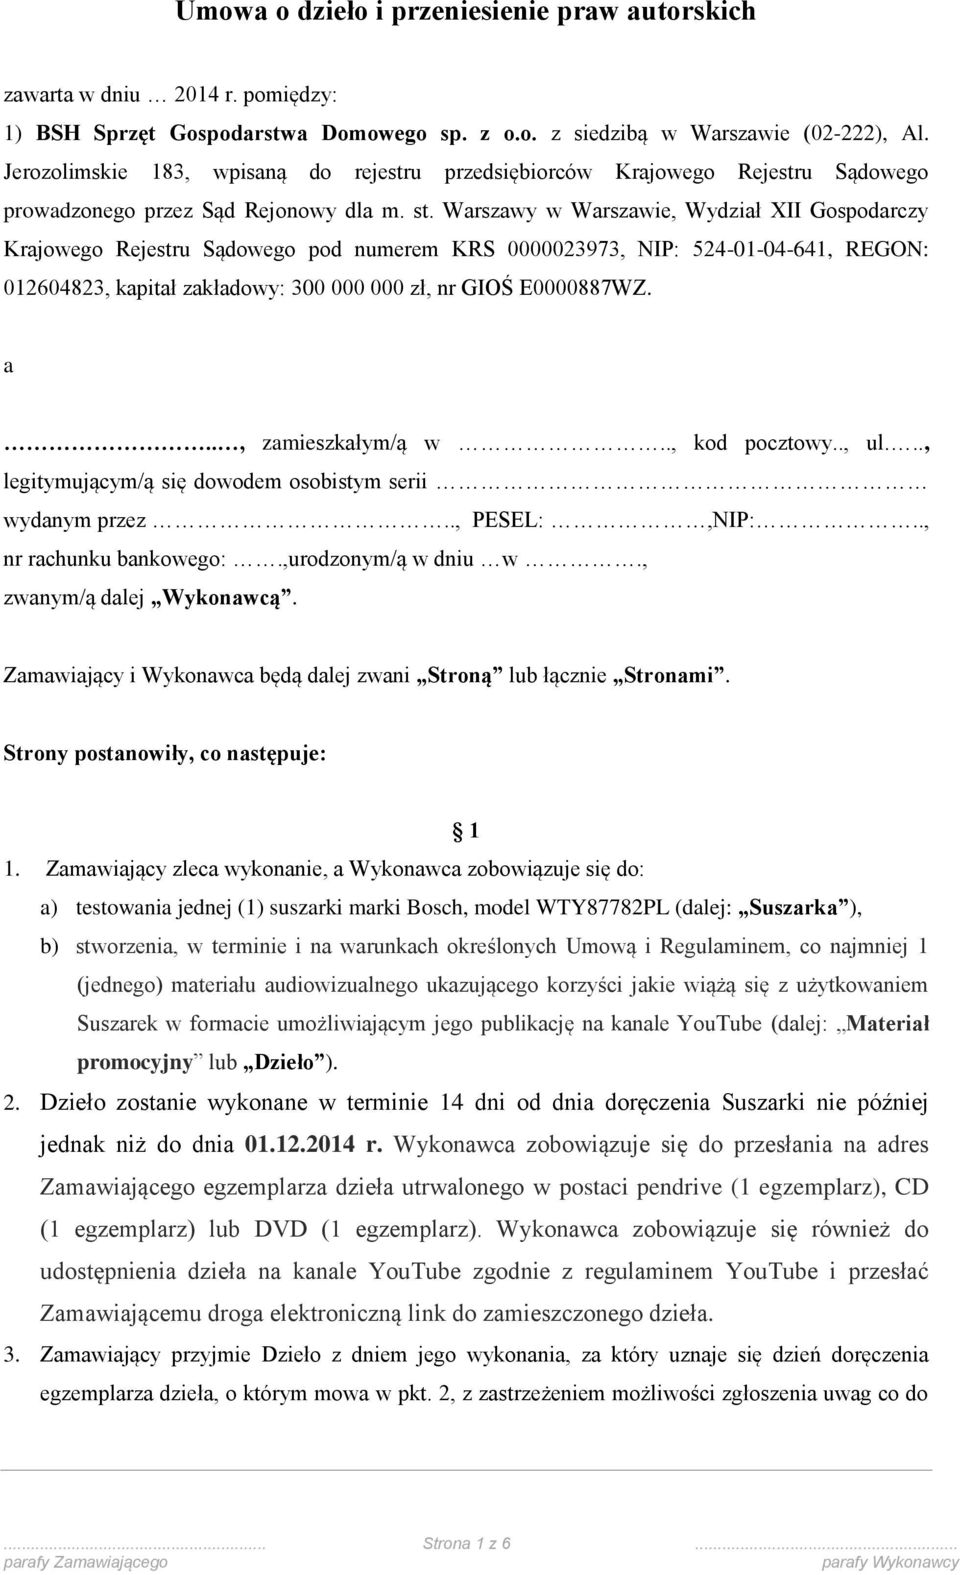 Umowa o dzieło i przeniesienie praw autorskich - PDF Free Download